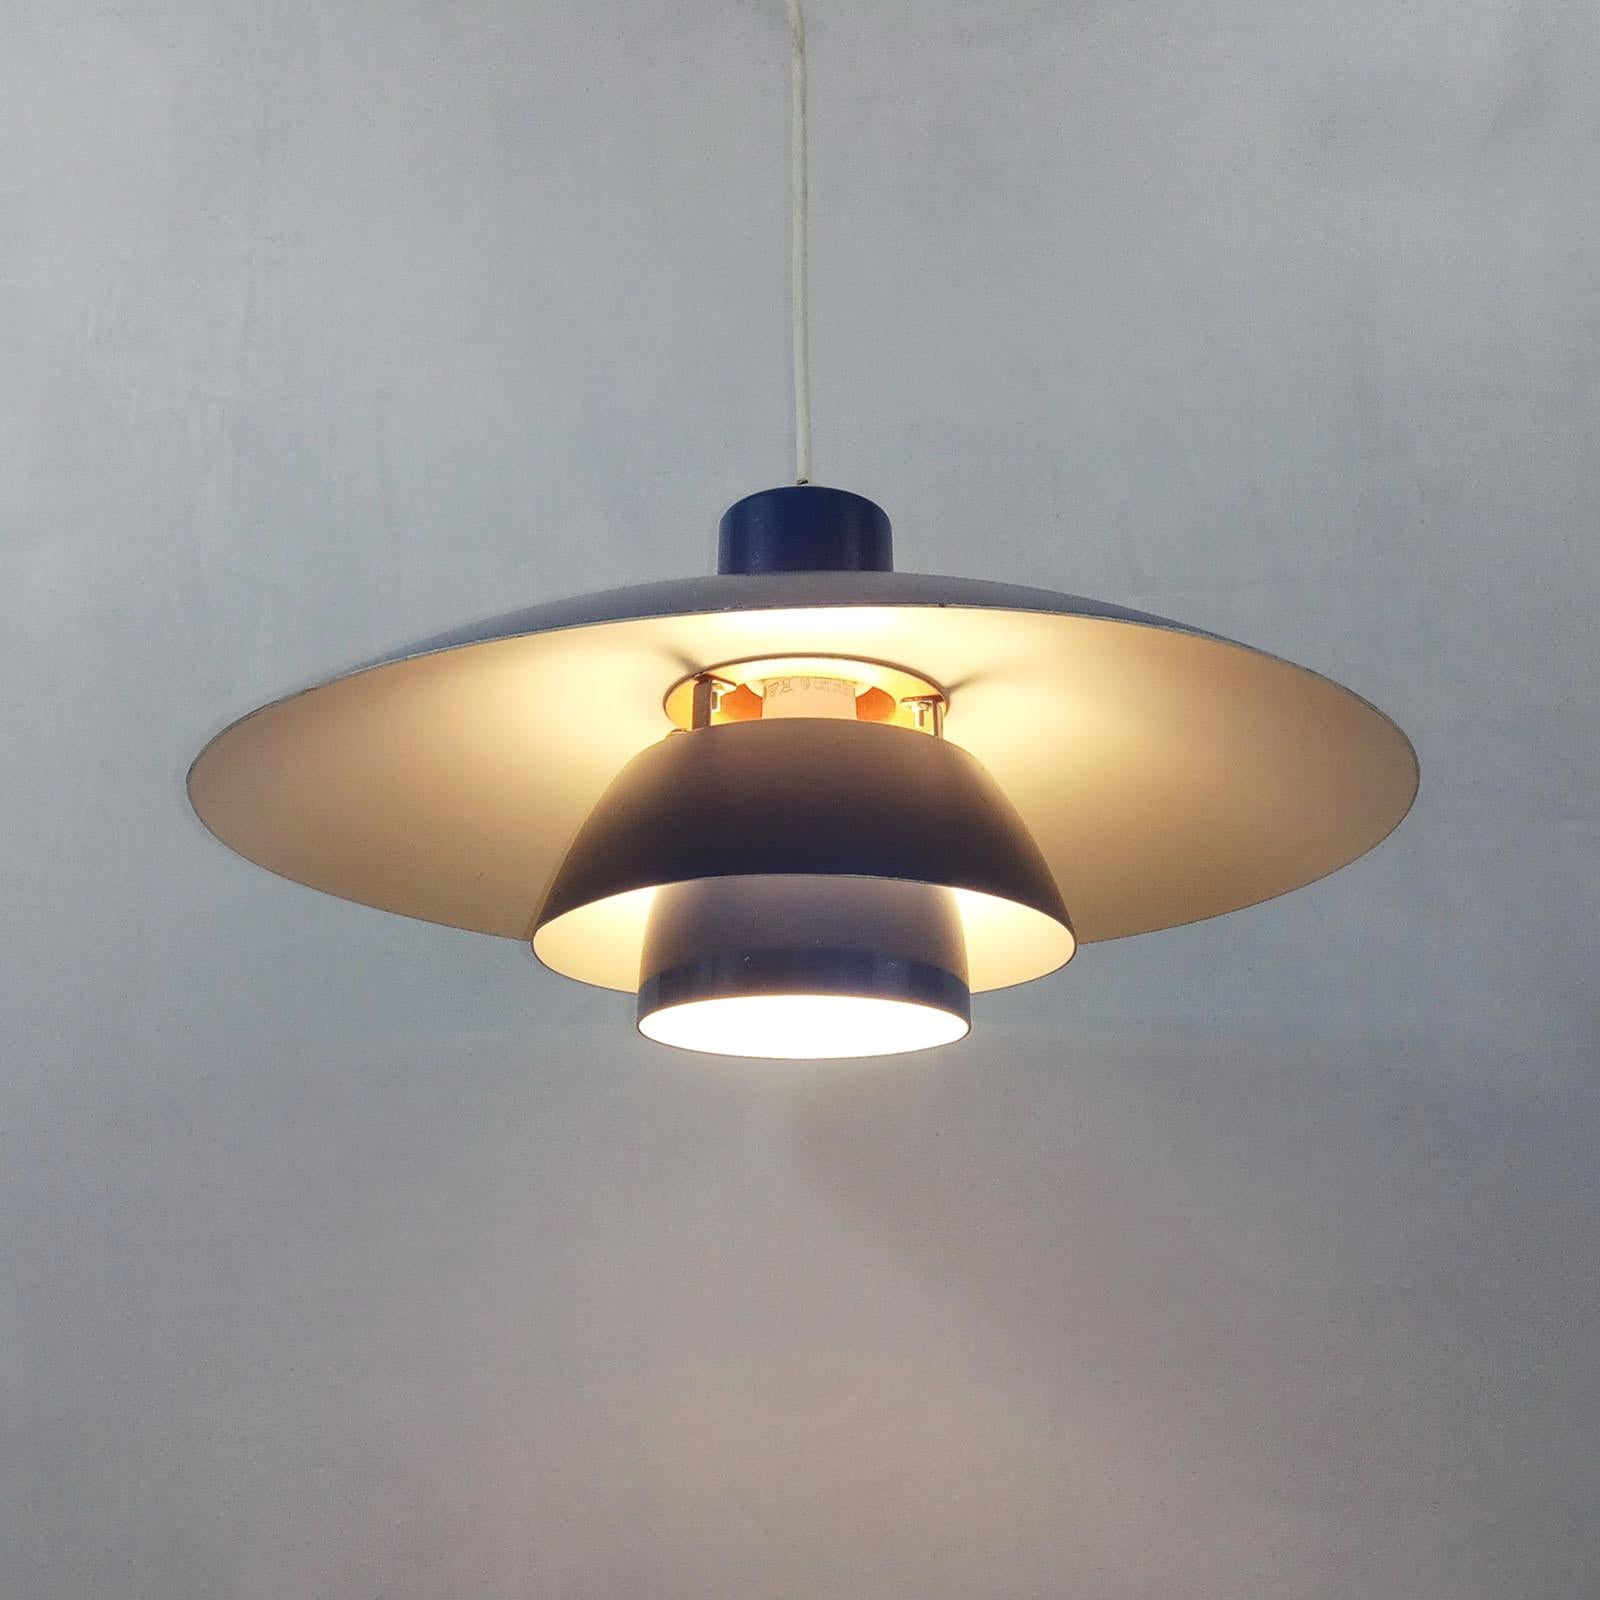 Mid-Century Modern Danish Pendant Light by Poul Henningsen PH 4/3 for Louis Poulsen